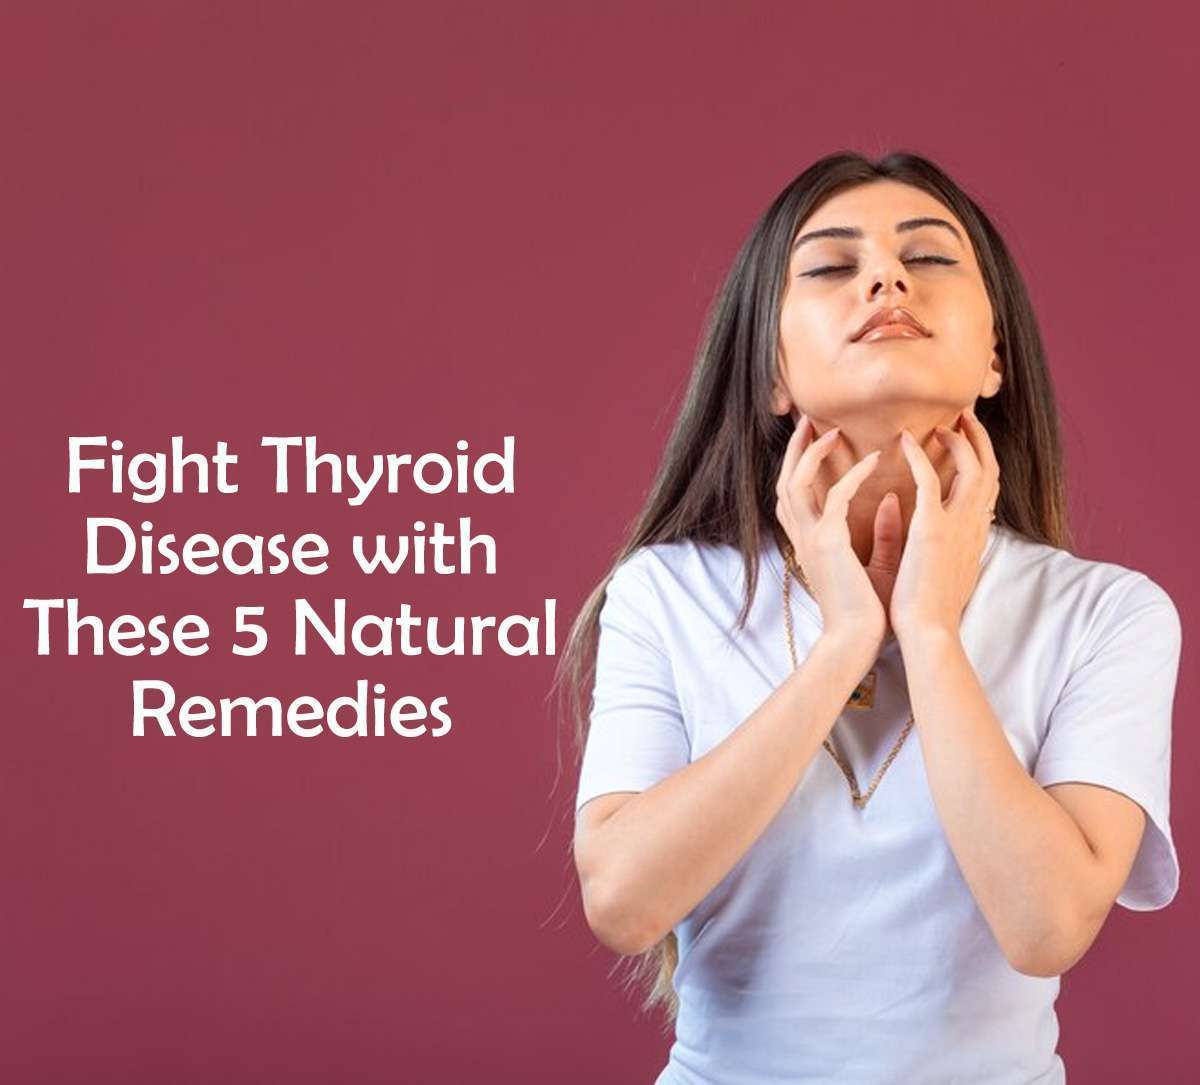 Thyroid को कंट्रोल करने के लिए खाएं ये 5 चीजें, दवा खाने की जरूरत भी नहीं पड़ेगी